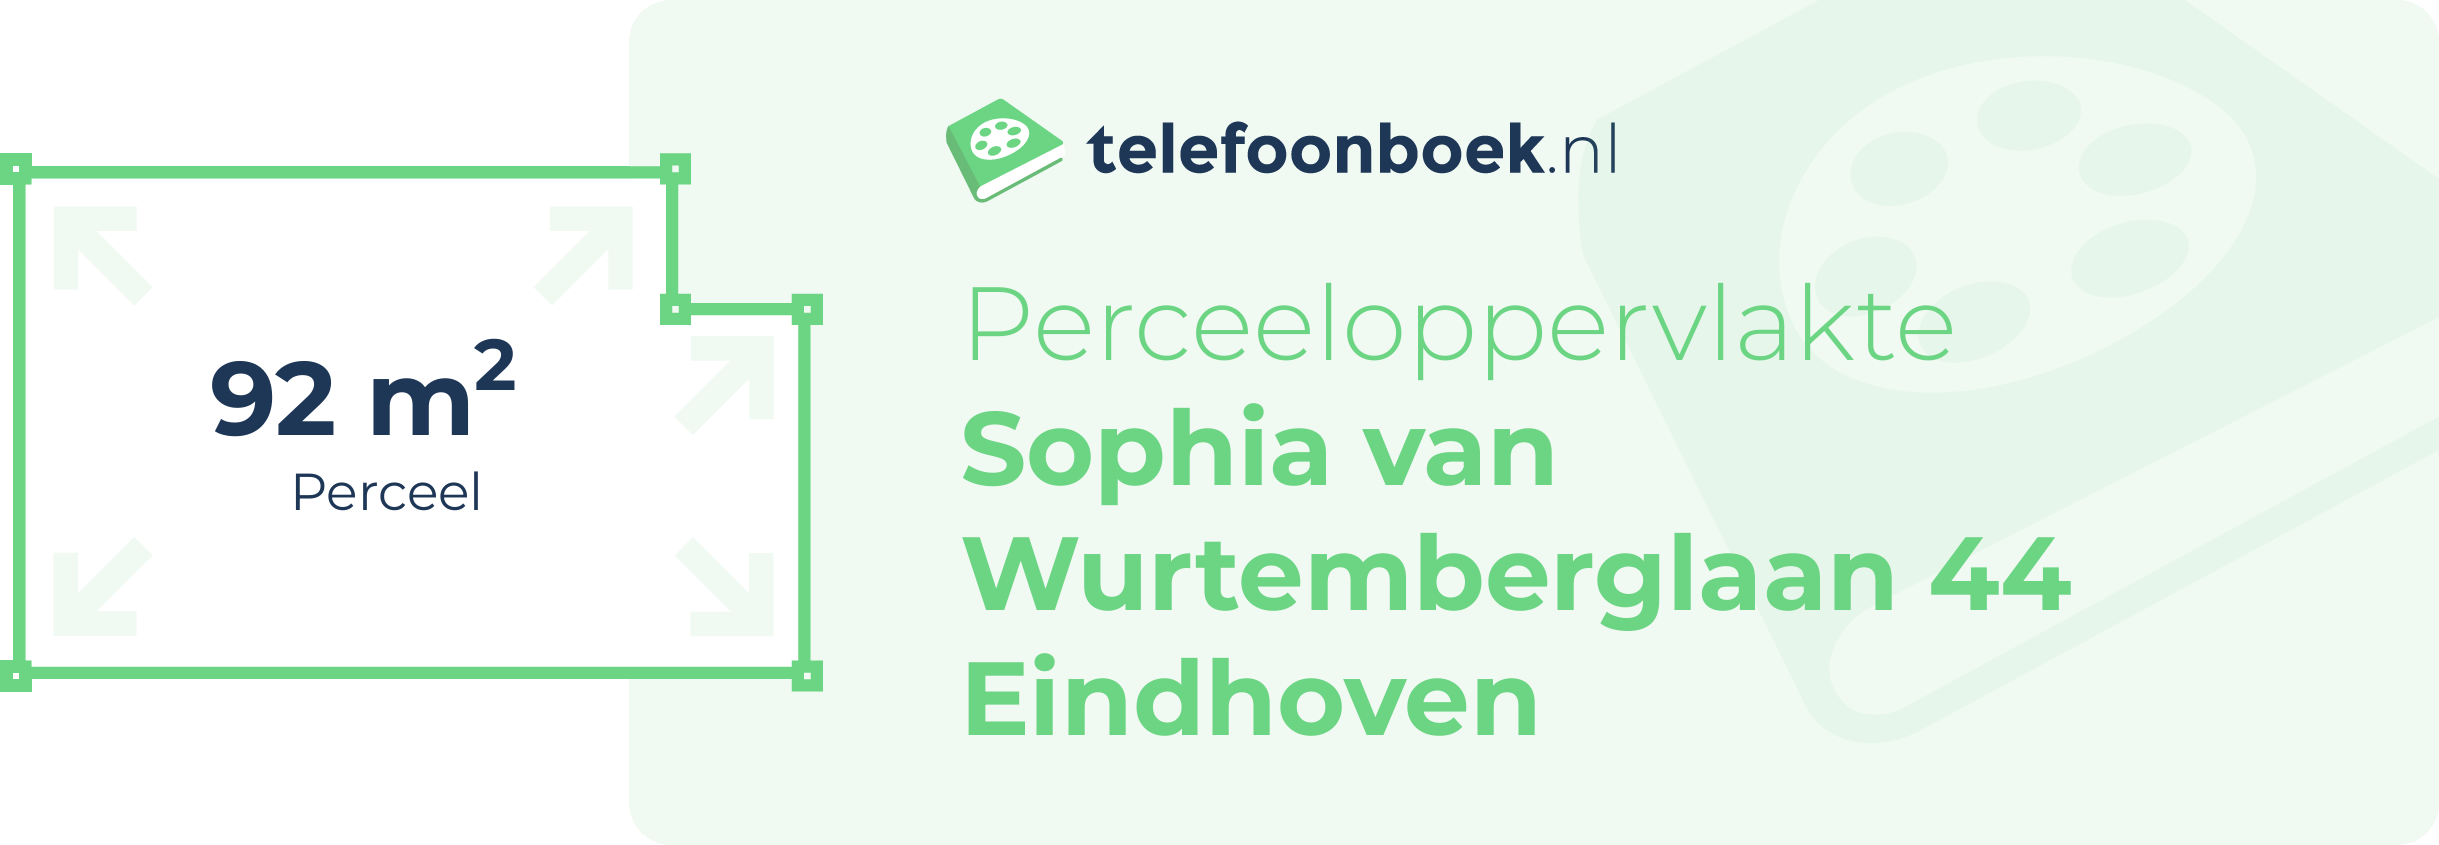 Perceeloppervlakte Sophia Van Wurtemberglaan 44 Eindhoven